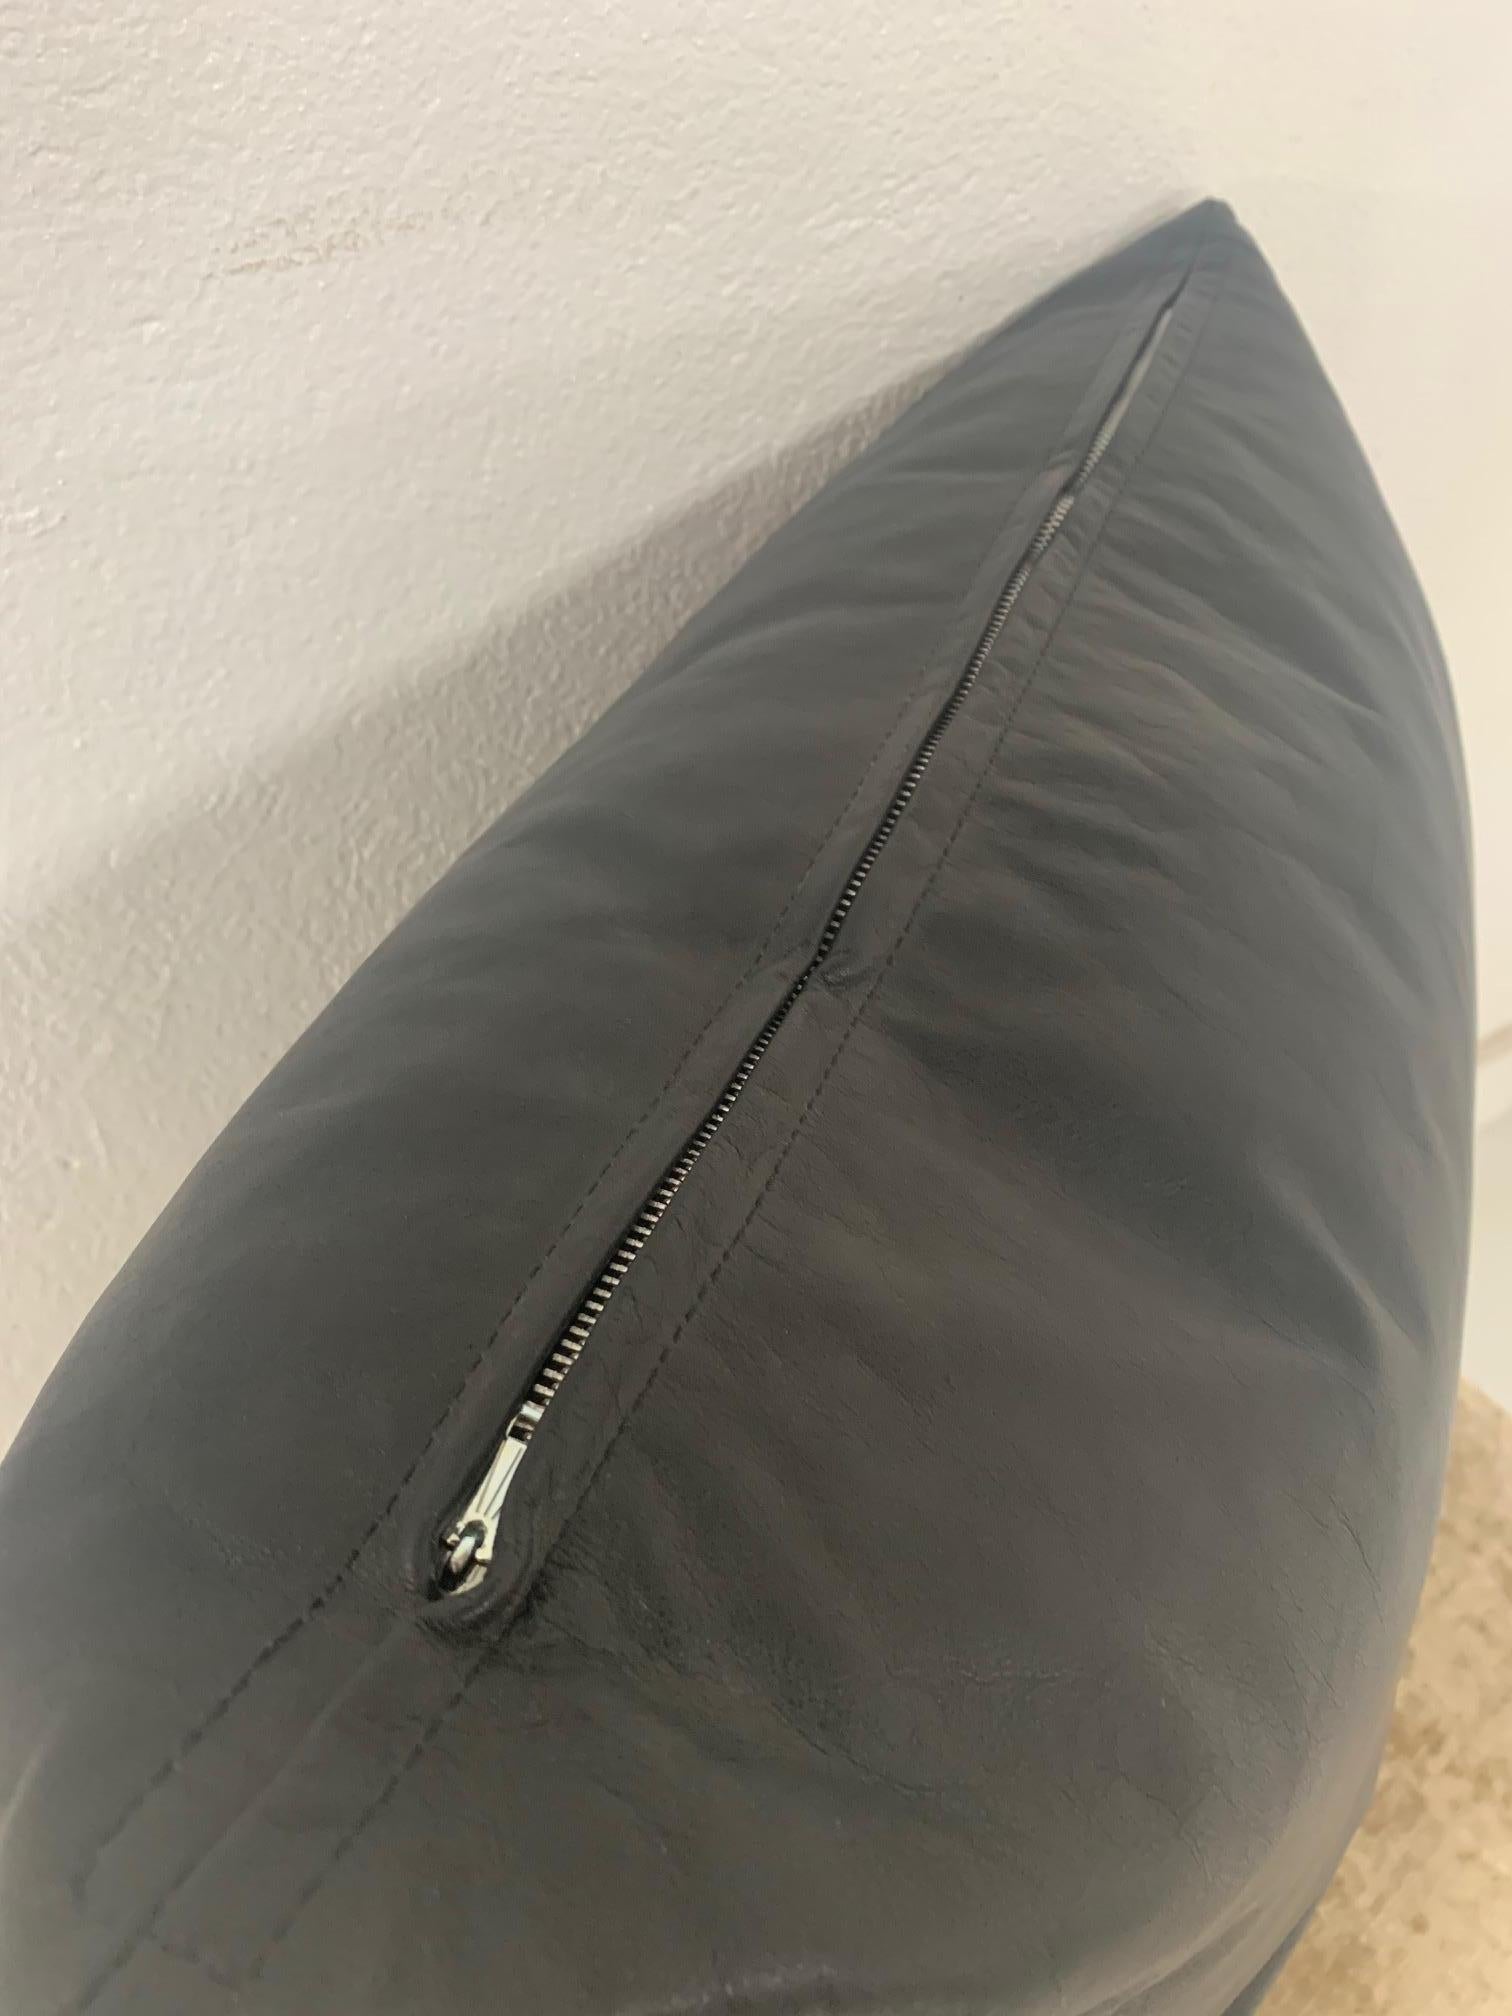 black leather throw pillows